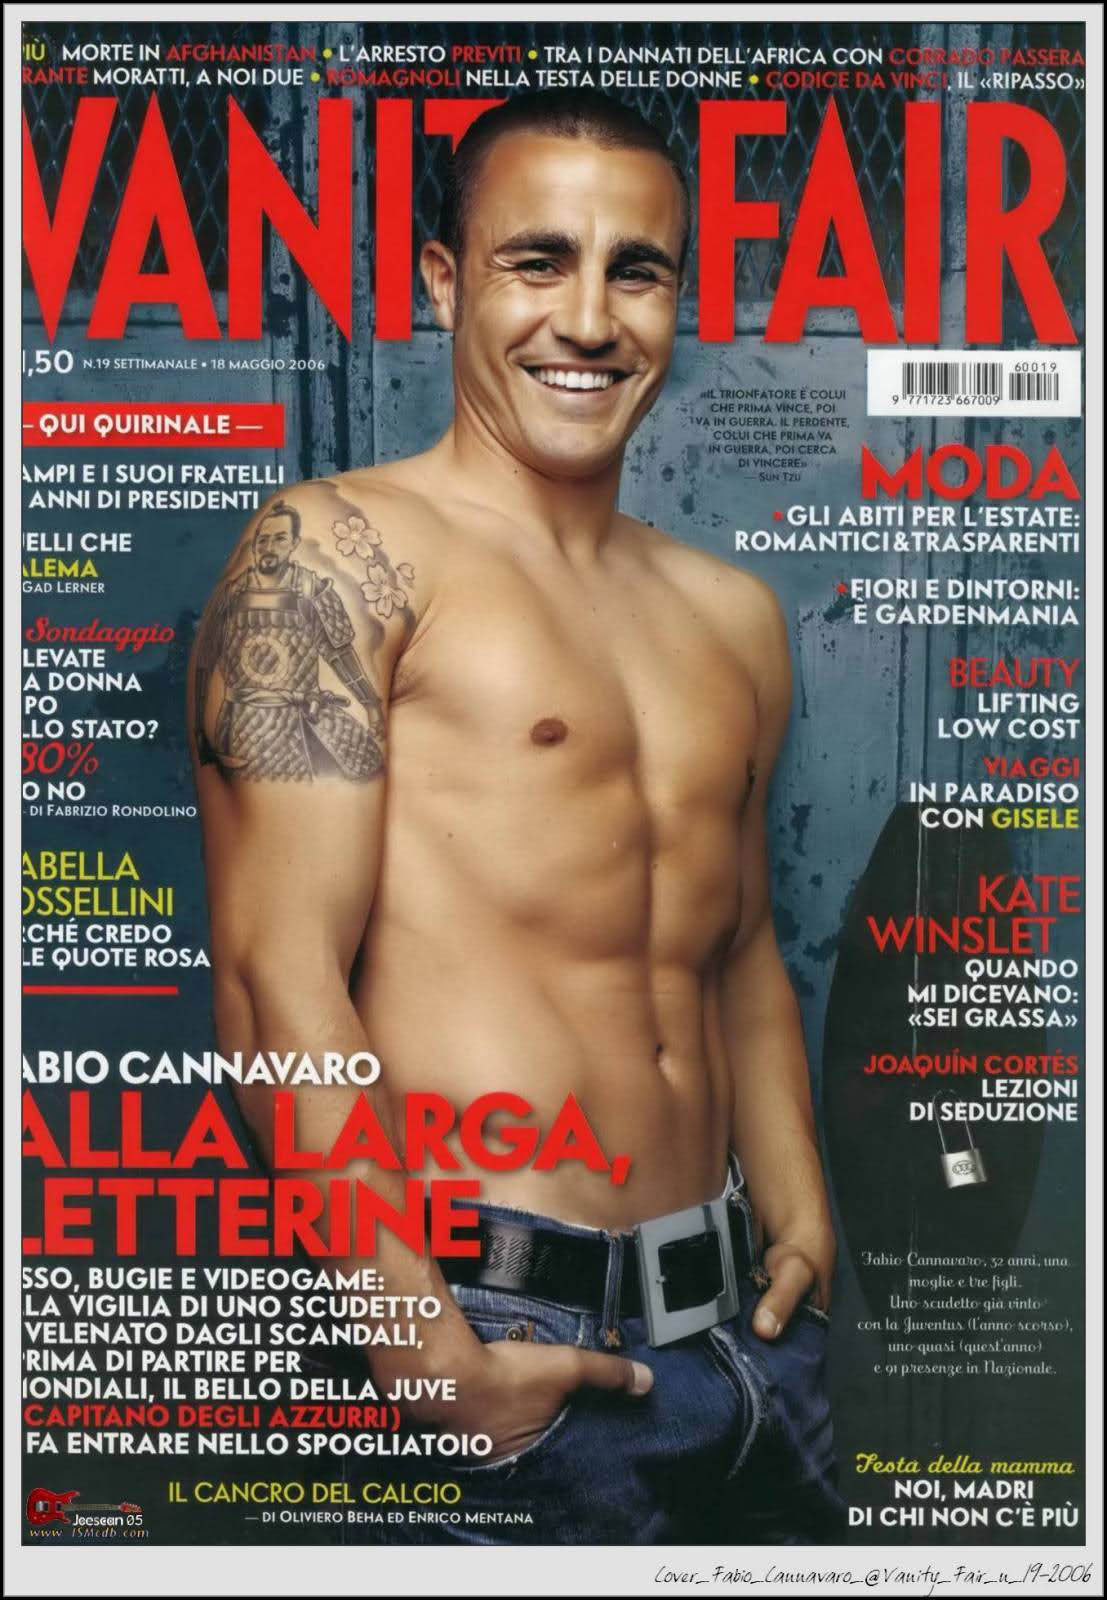 Fabio Cannavaro Japanese tattoo Vanity Fair Italia